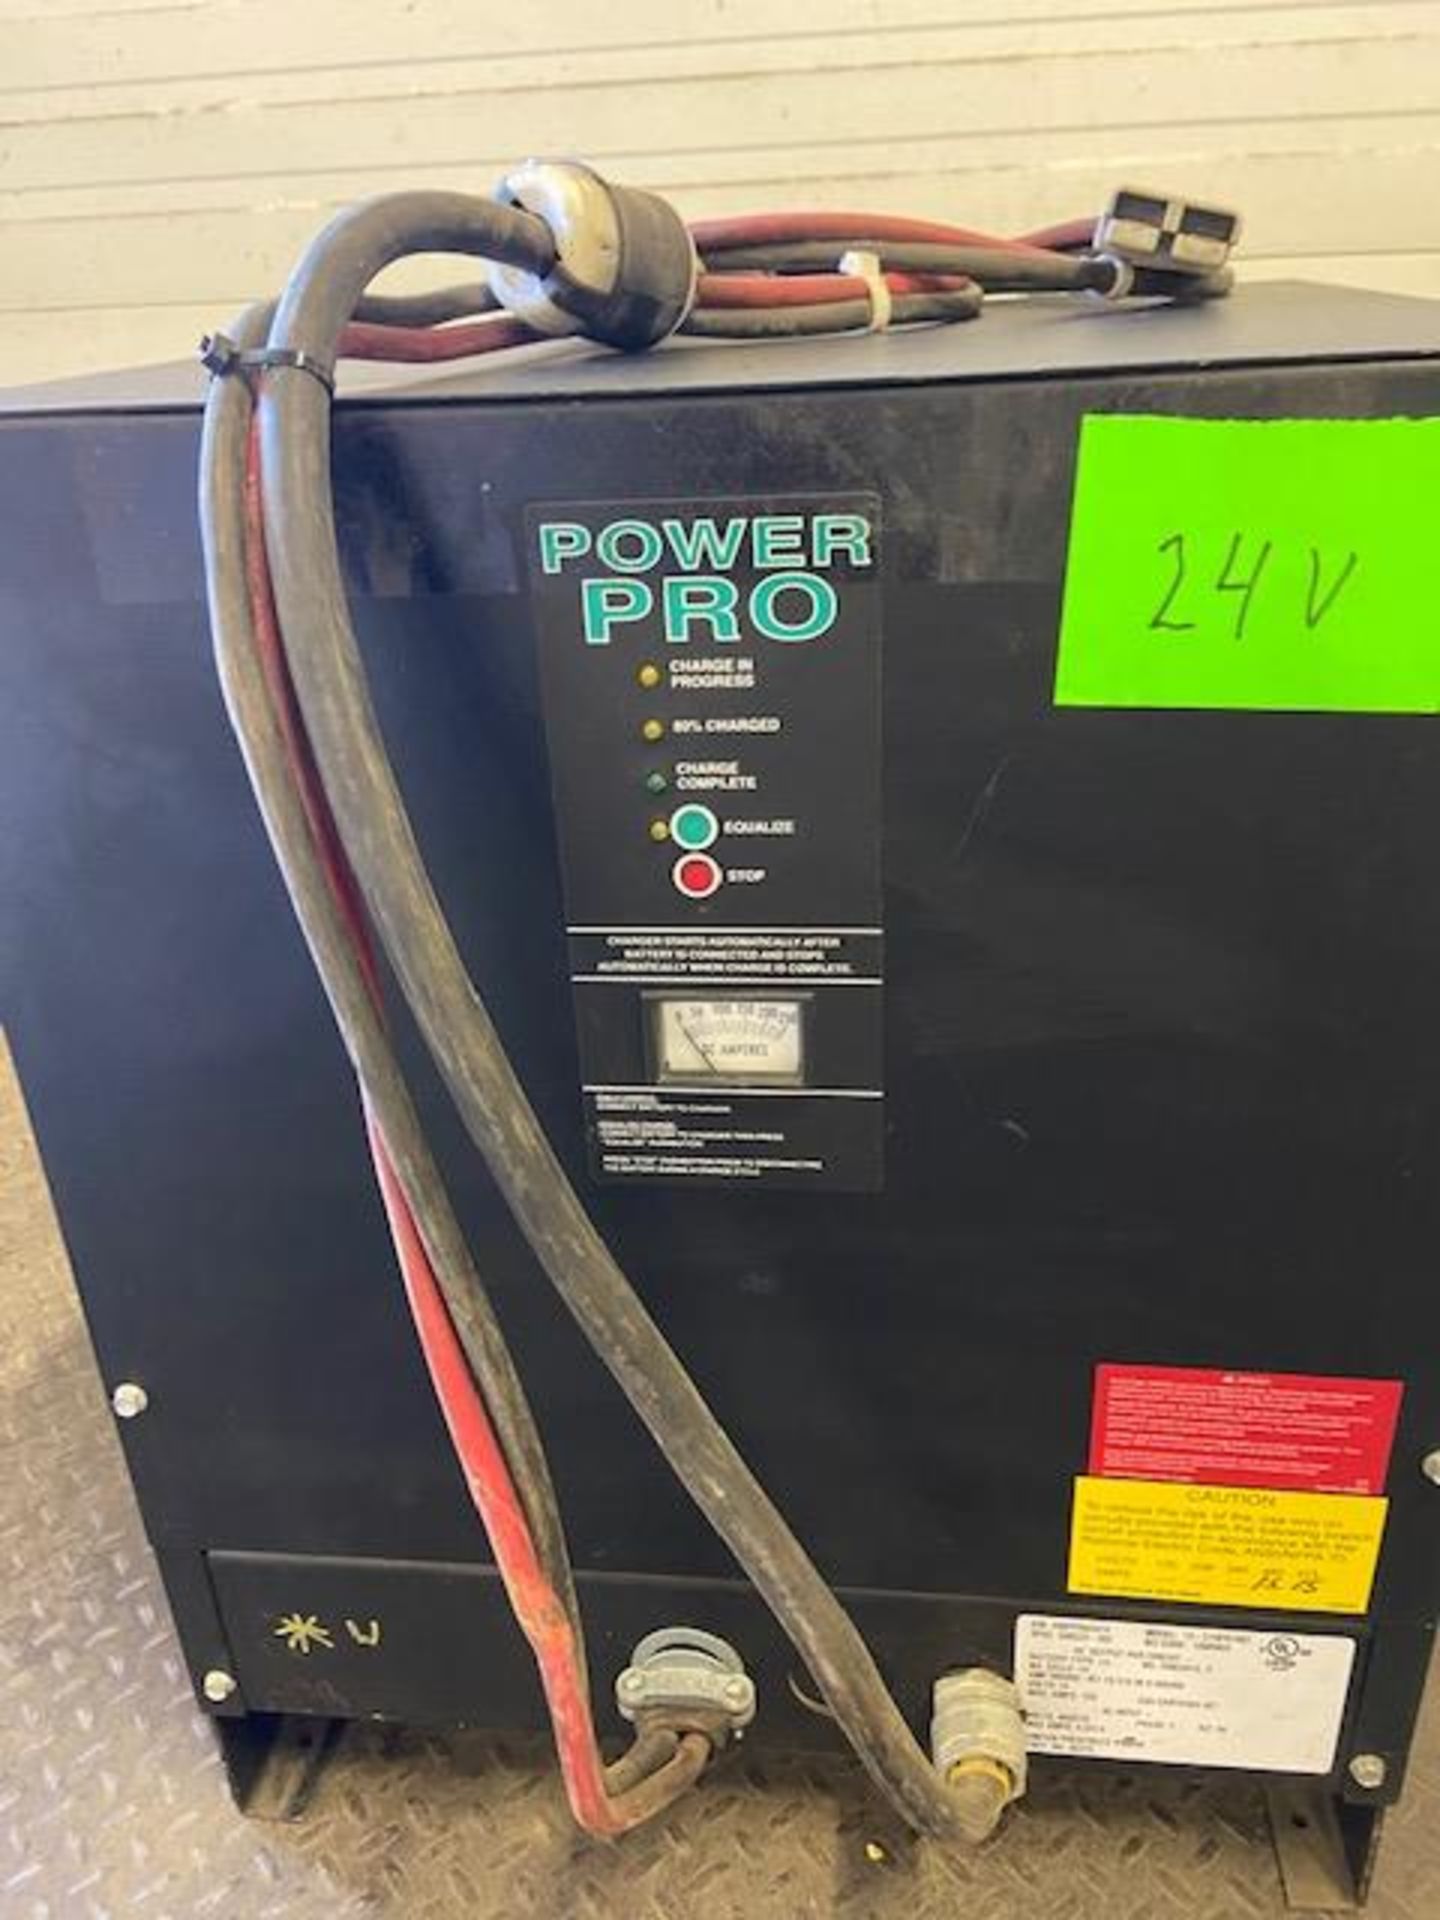 Power Pro 24V battery charger model 12-510FR100T